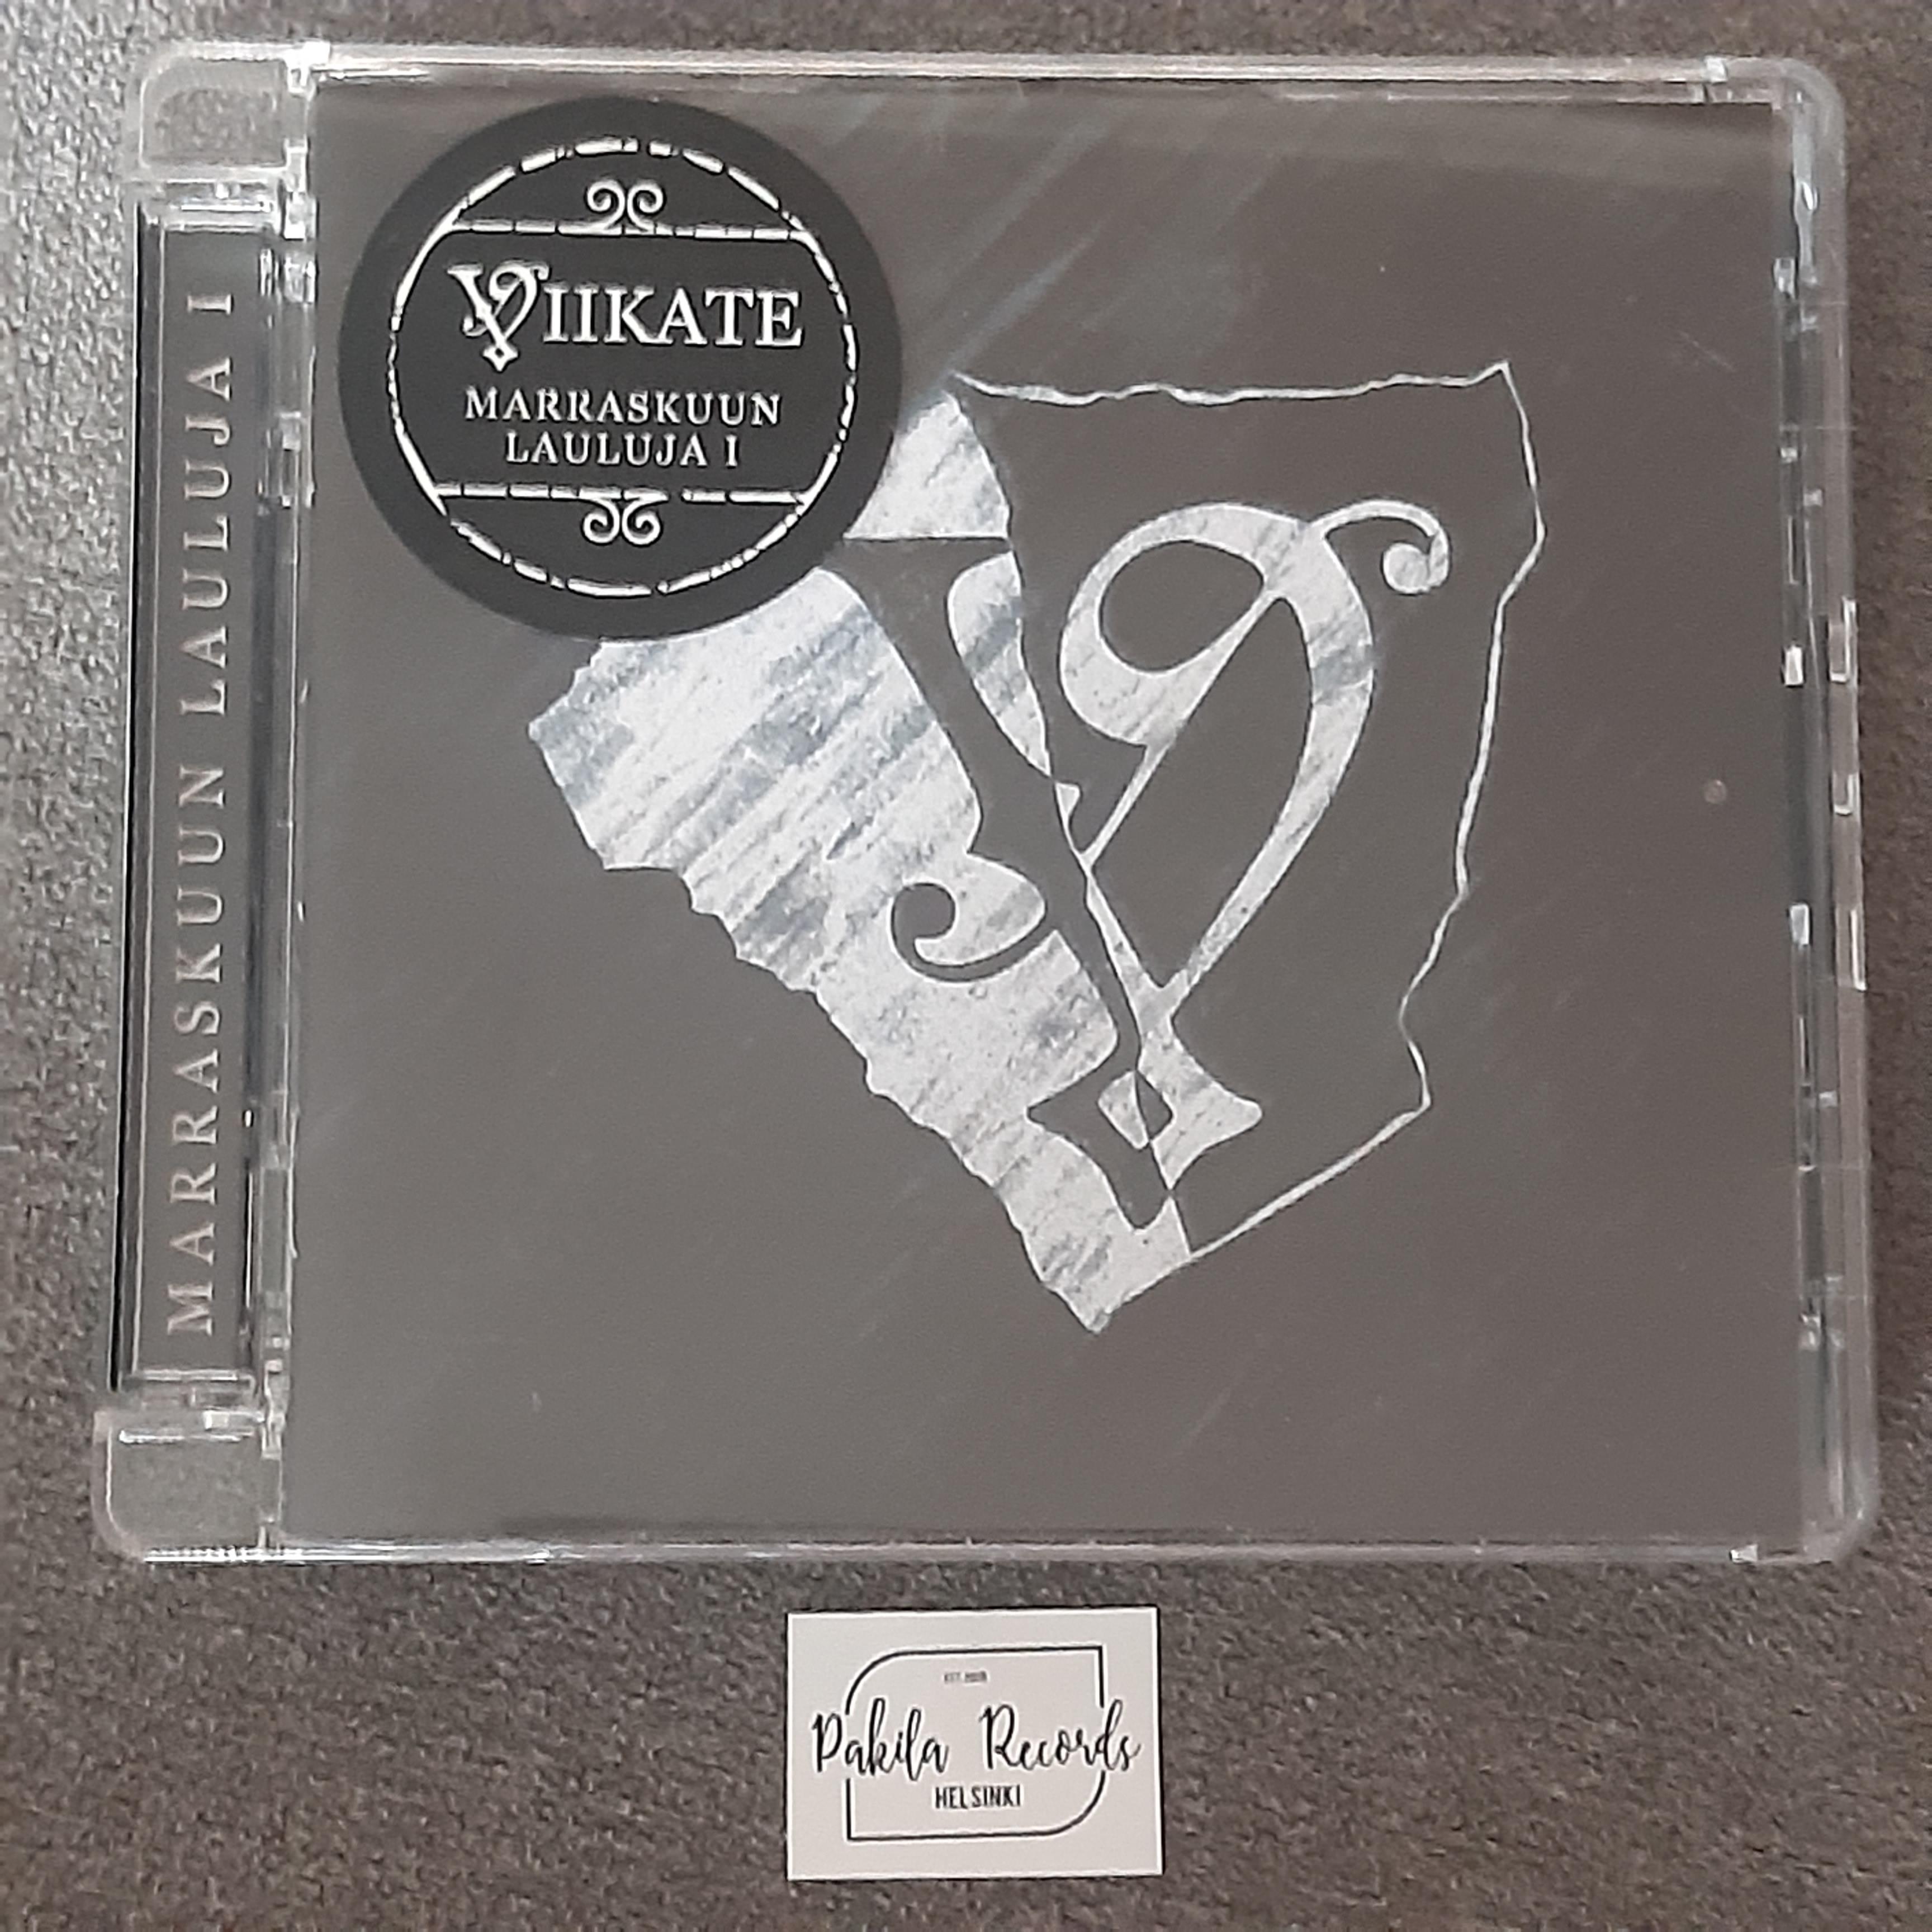 Viikate - Marraskuun lauluja 1 - CD (käytetty)